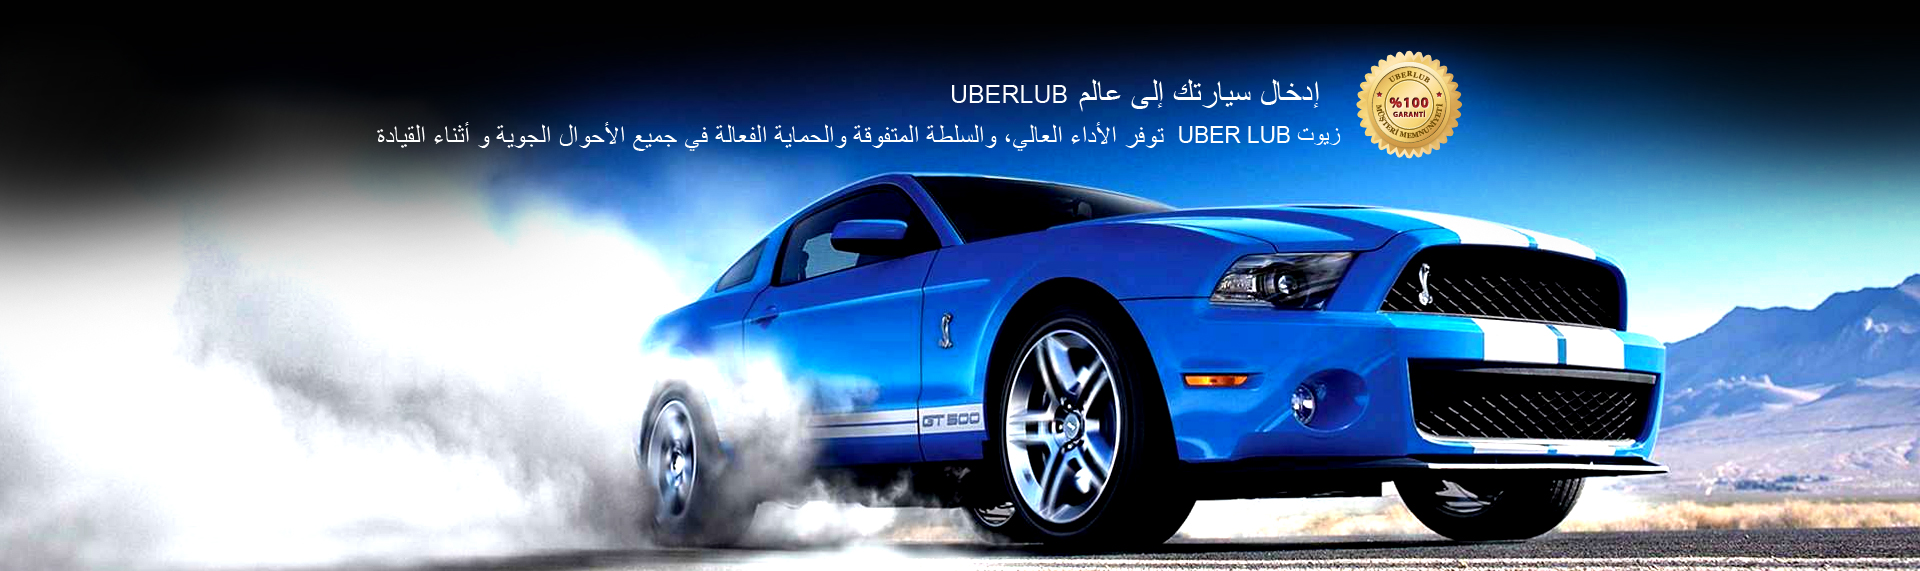 Uberlub Emek Petrol Ürünleri 1 - ar